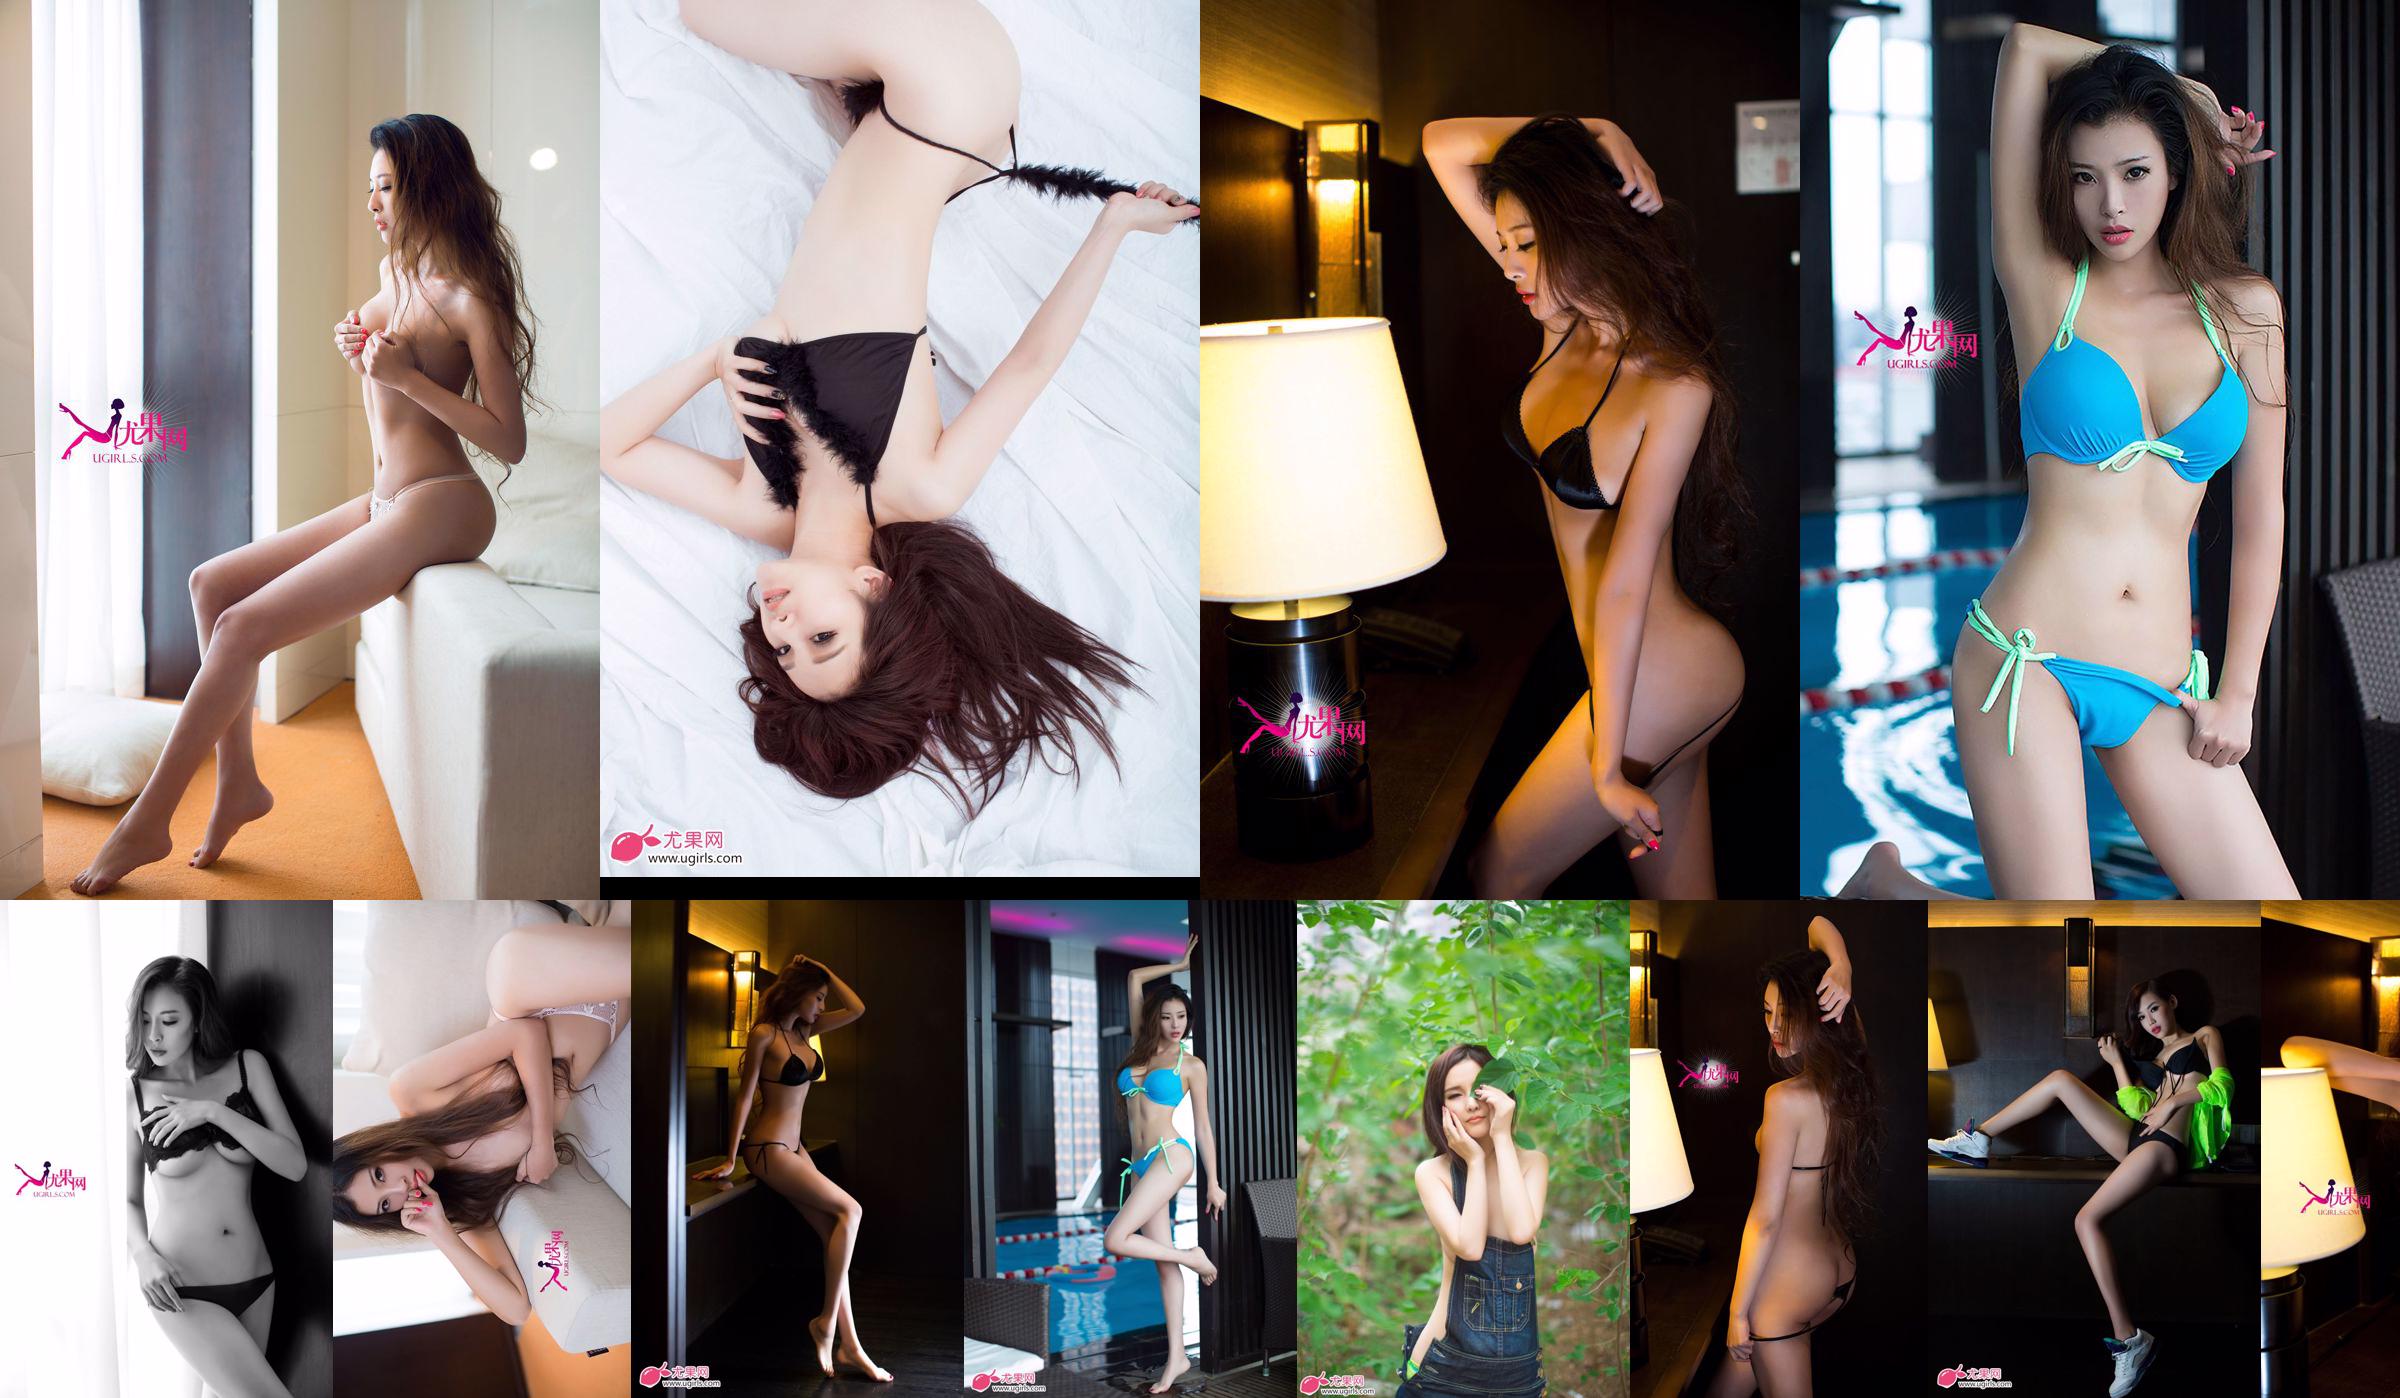 [Ugirls] E043 Langbenig model Zeng Chen "Summer Sexy" No.4d43e7 Pagina 6